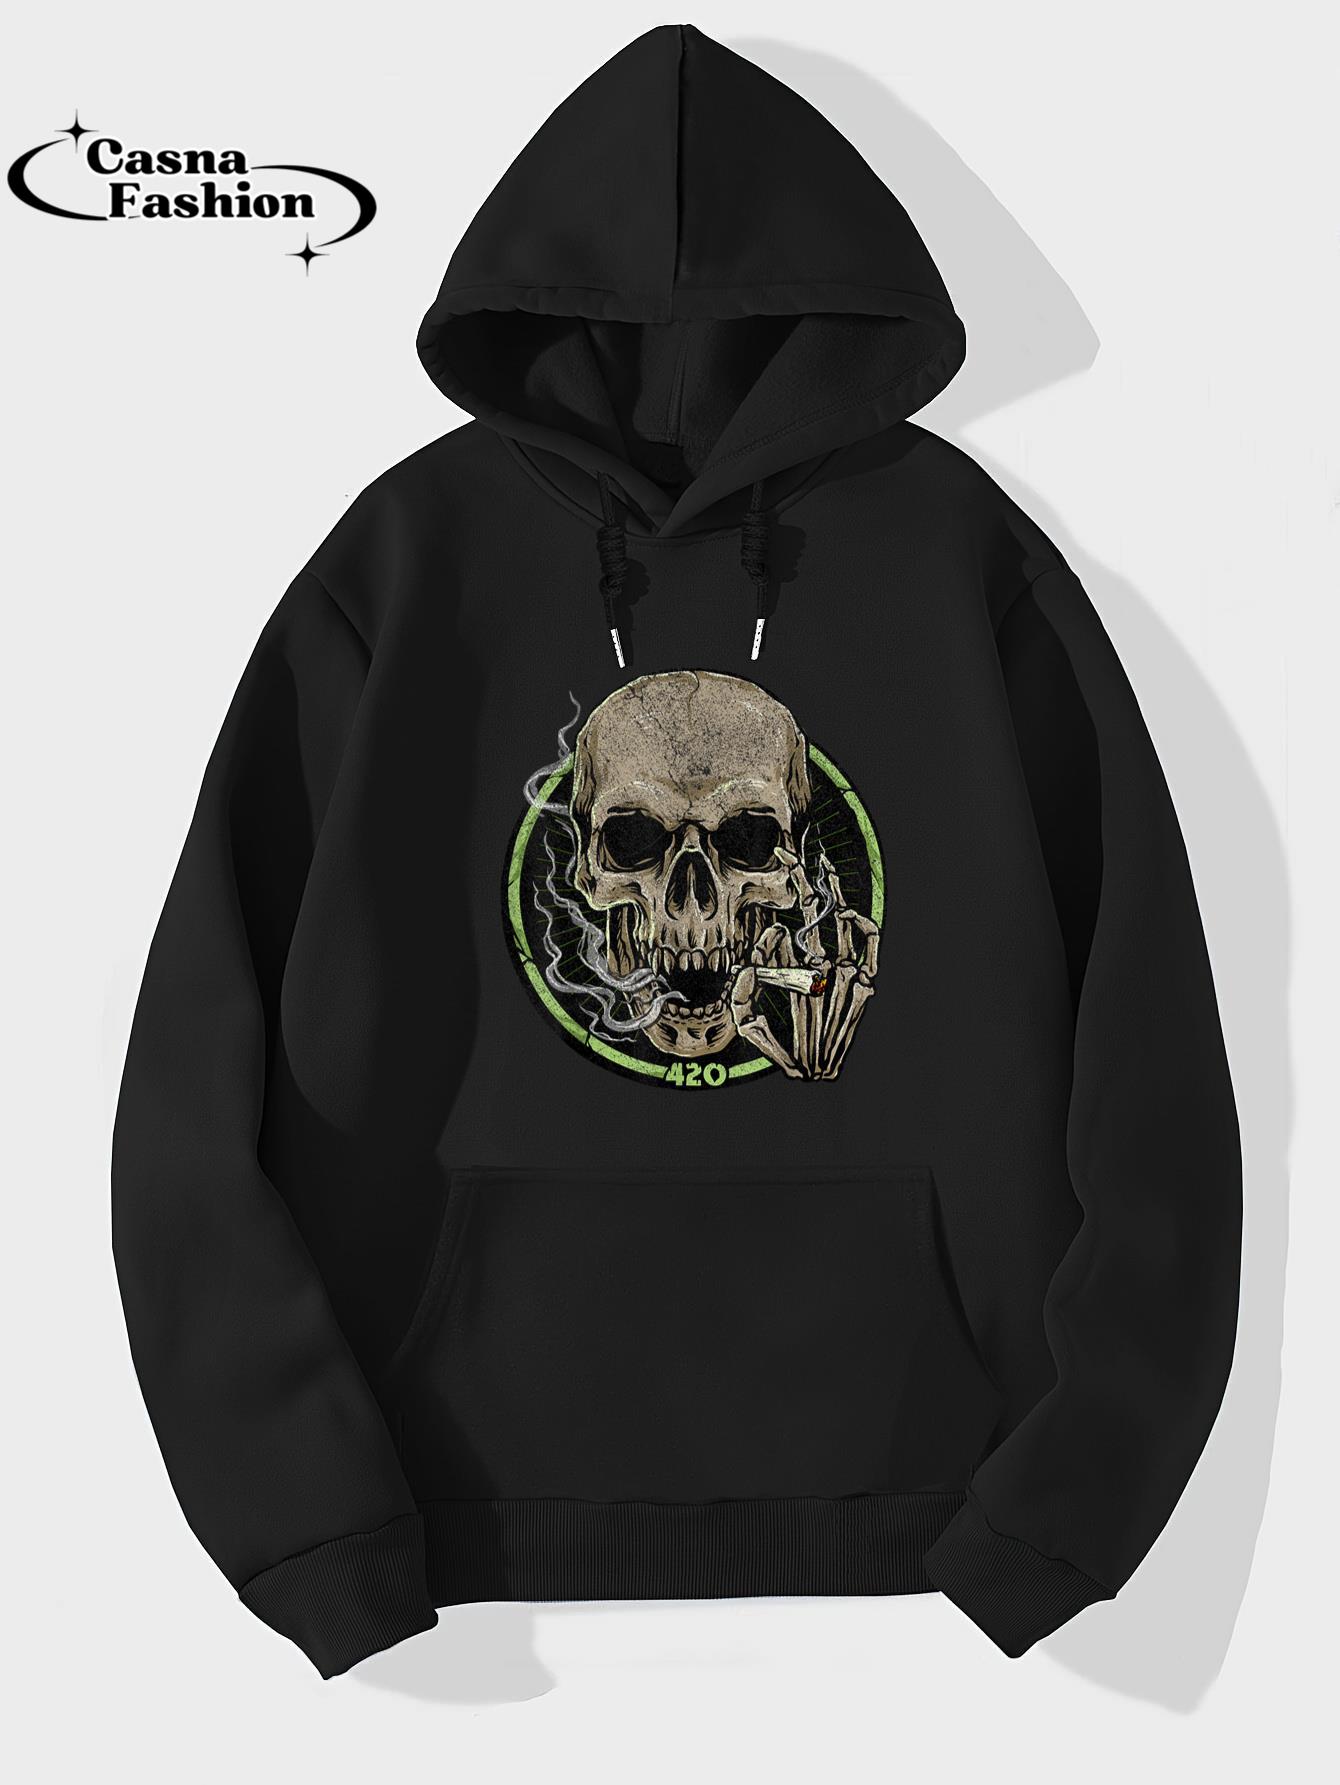 casnafashion_Hoodie_Smoking Skull Graphic Tee Musician Skeleton Party Tee T-Shirt_hoodie_black hoodie